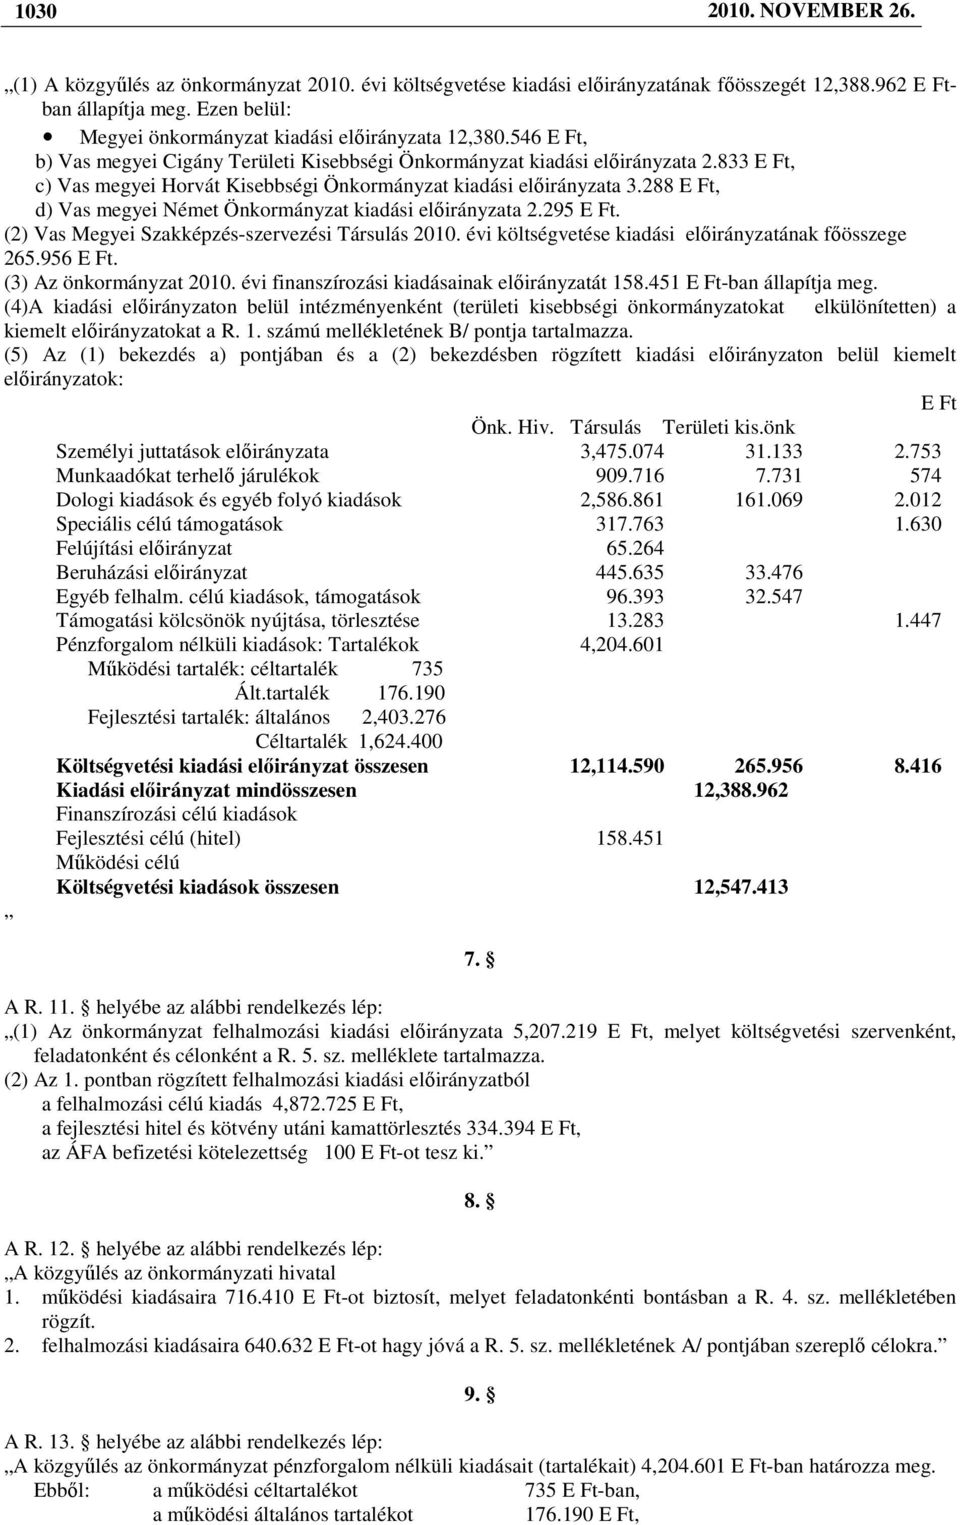 288 E Ft, d) Vas megyei Német Önkormányzat kiadási elıirányzata 2.295 E Ft. (2) Vas Megyei Szakképzés-szervezési Társulás 2010. évi költségvetése kiadási elıirányzatának fıösszege 265.956 E Ft.